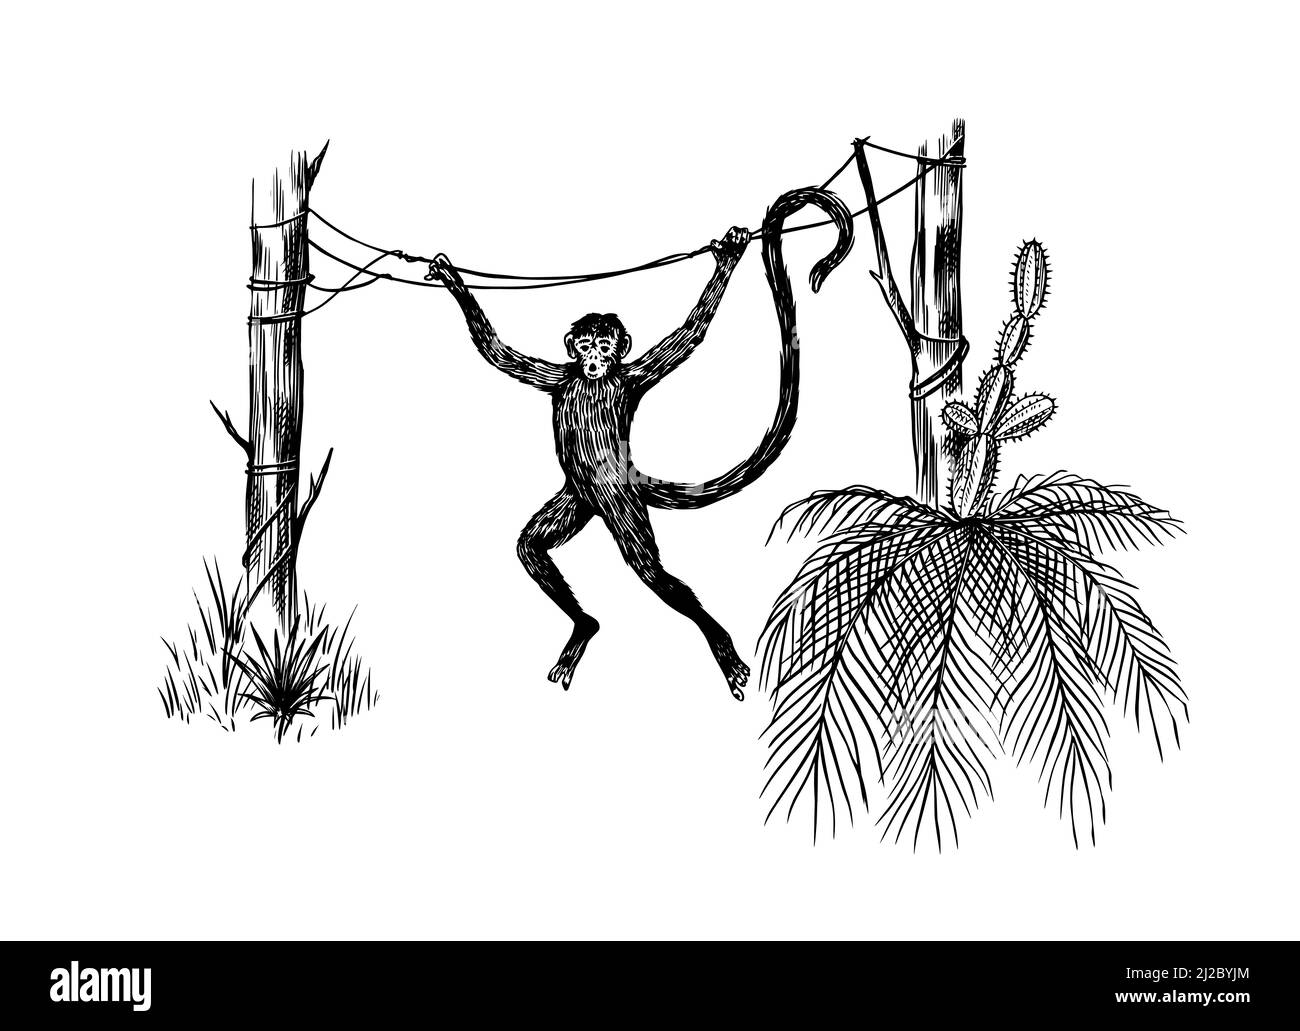 Kokosnusspalme. Affen springen auf Äste. Tropische Bäume exotische Pflanzen. Phoenix- oder Datumsvarianten. Östliche Landschaft. Exotische Natur. Linearer Dschungel Stock Vektor